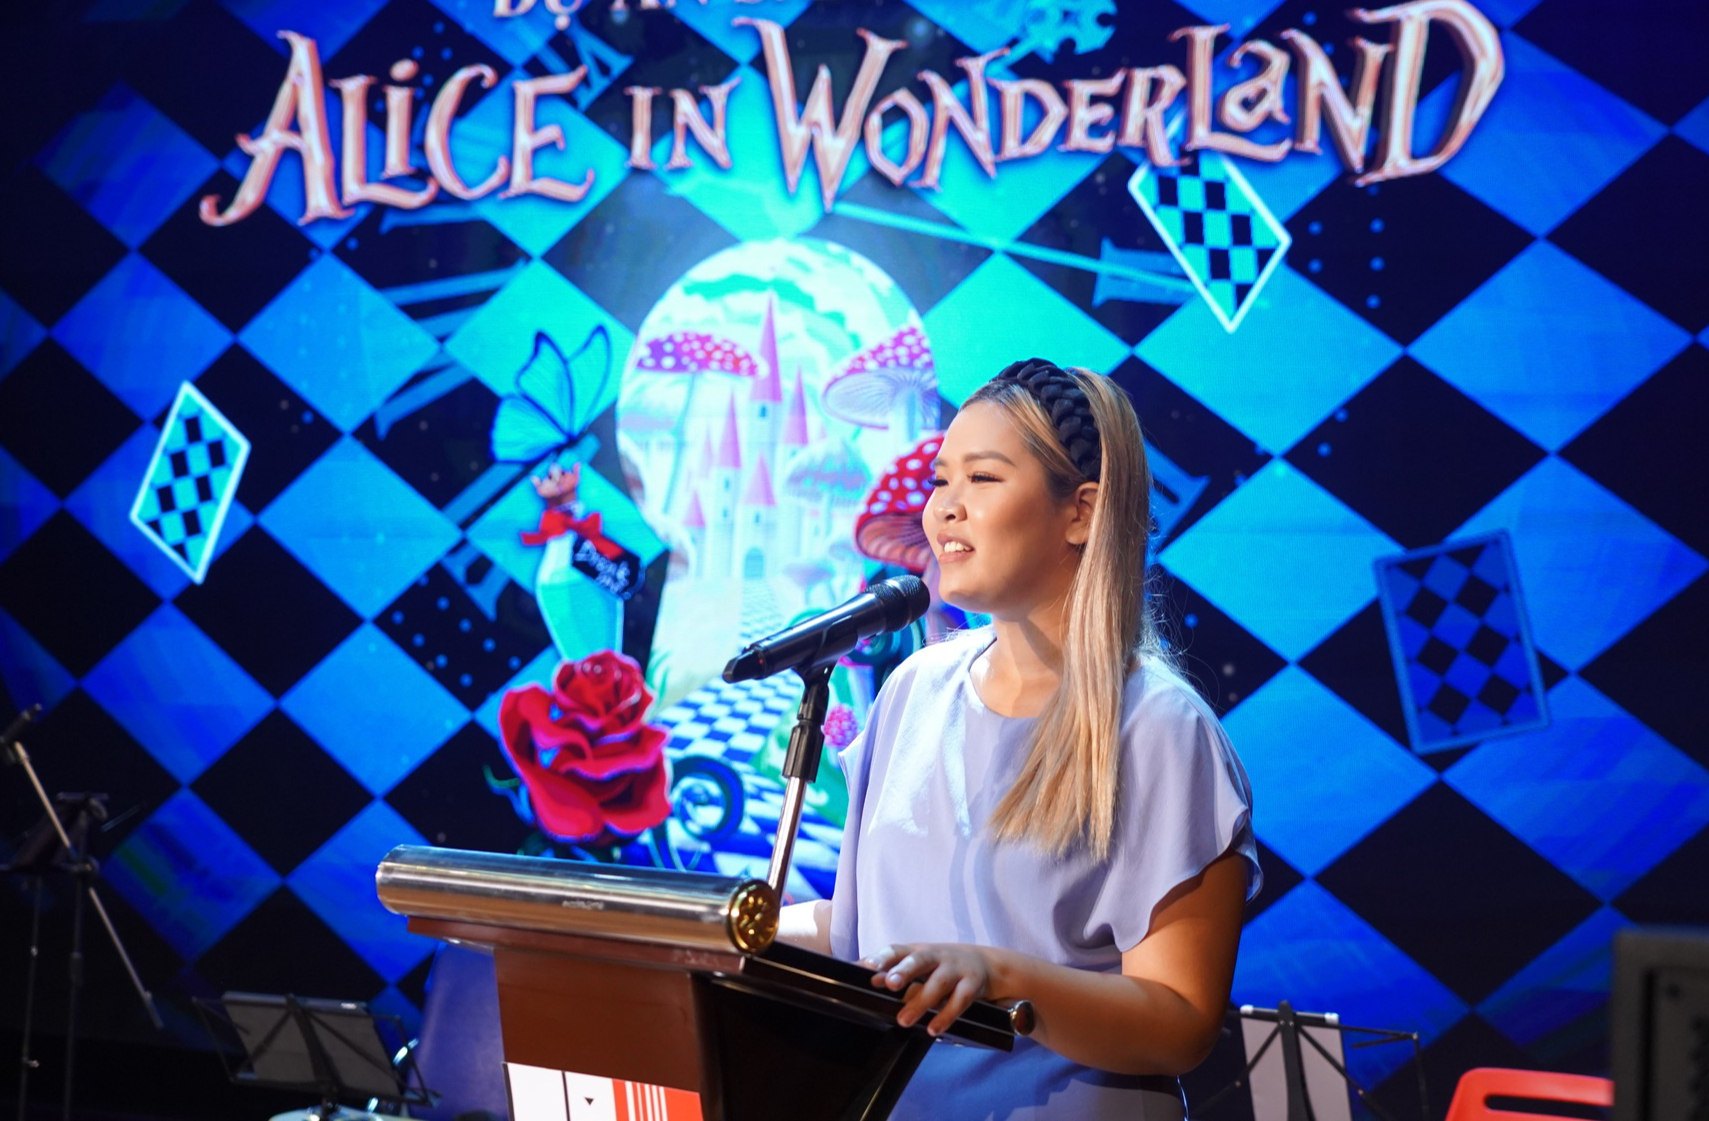 Nữ đạo diễn 21 tuổi dàn dựng vở nhạc kịch đẳng cấp quốc tế “Alice in Wonderland”  - Ảnh 2.